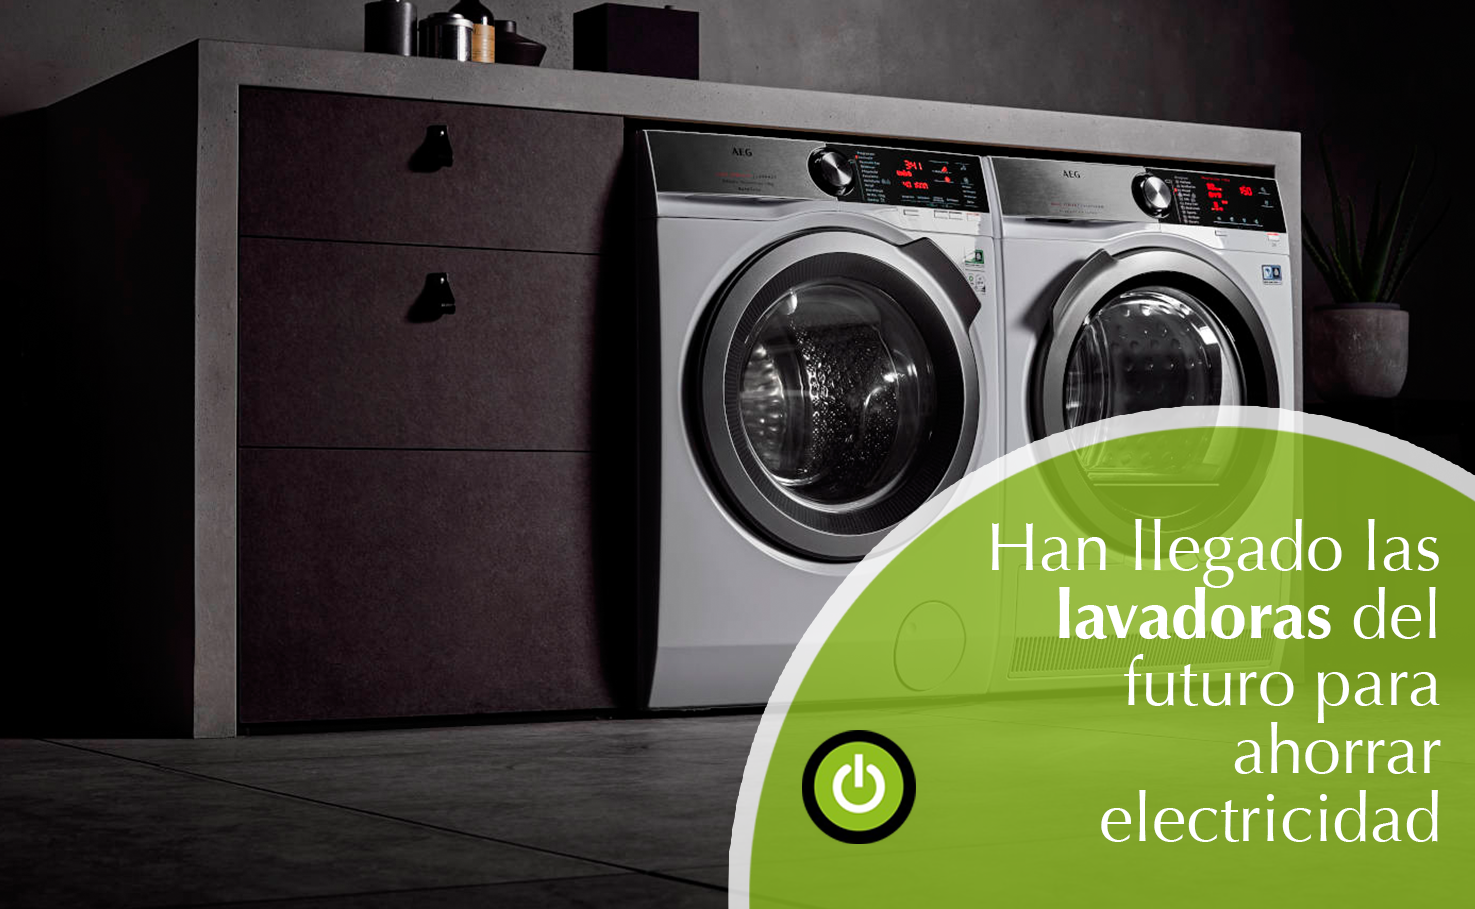 Reducir la huella de carbono y ahorrar electricidad con tu lavadora